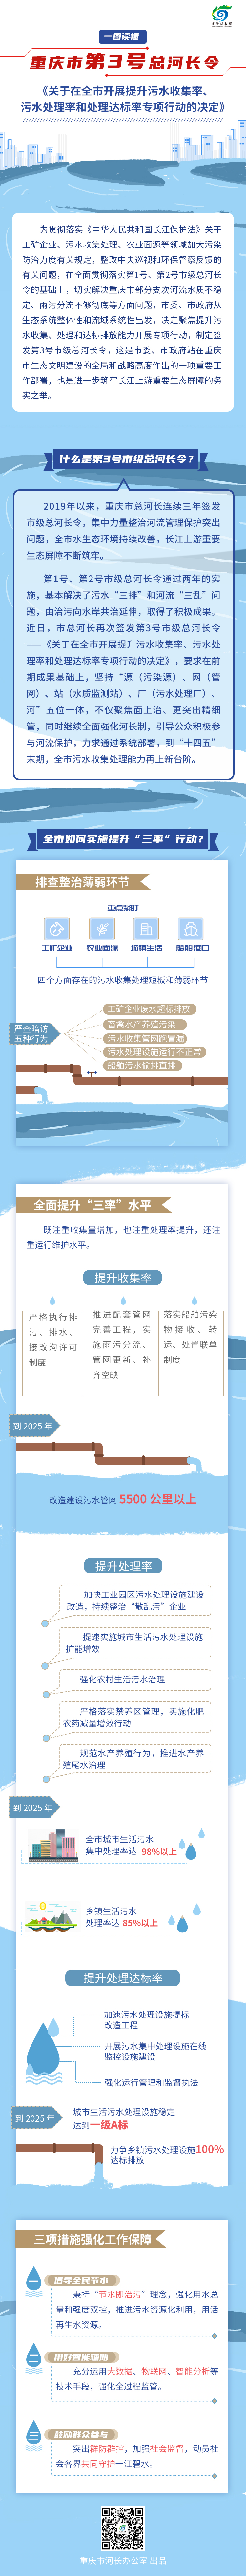 重庆发布第3号总河长令 全面开展提升“三率”专项行动